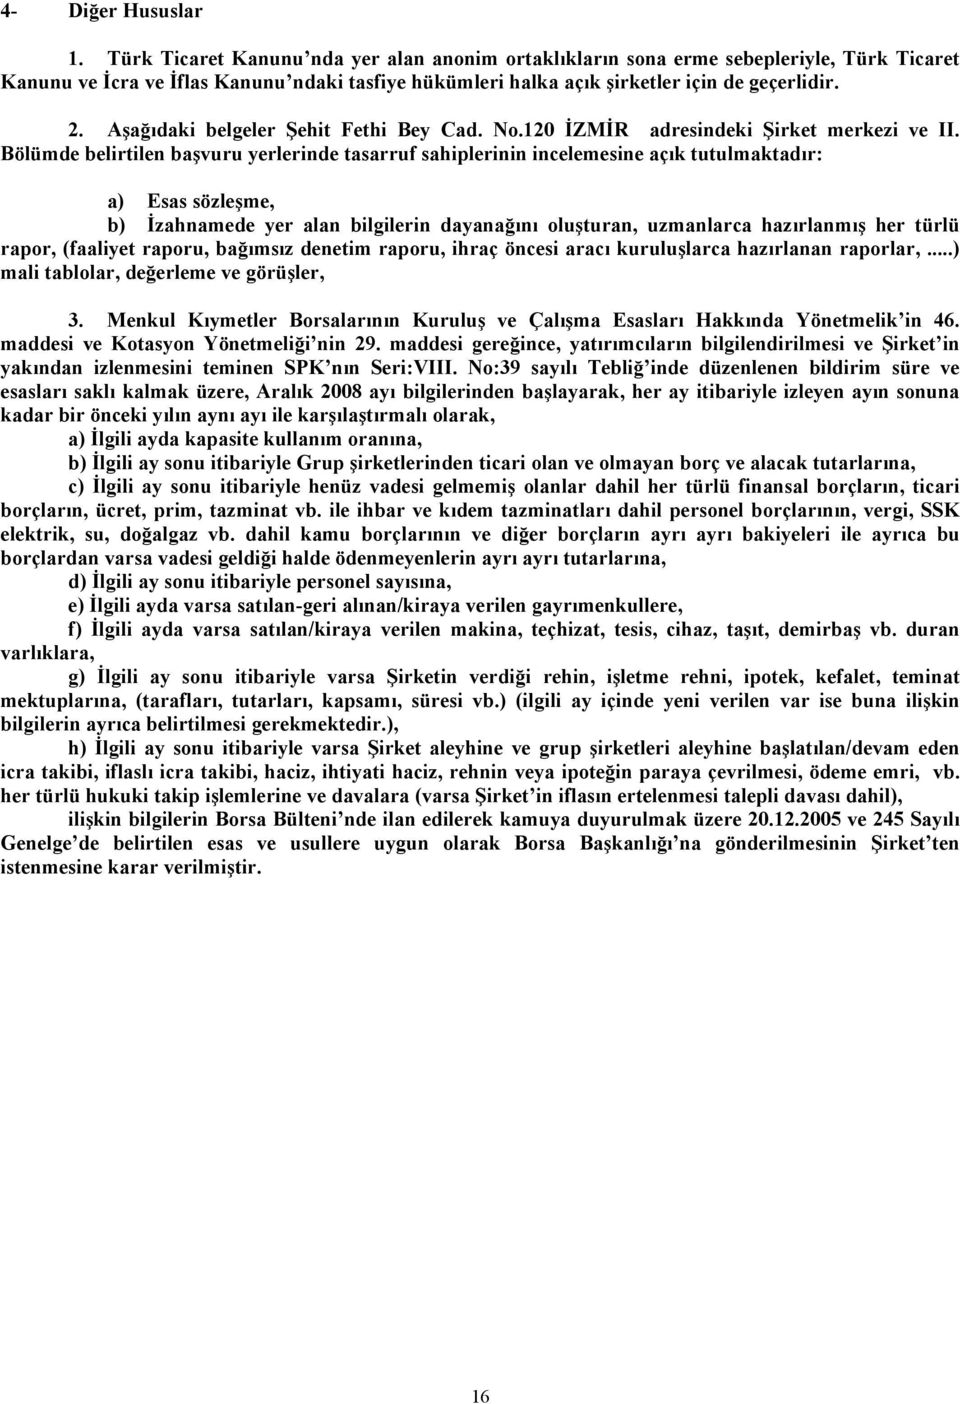 Aşağıdaki belgeler Şehit Fethi Bey Cad. No.120 İZMİR adresindeki Şirket merkezi ve II.